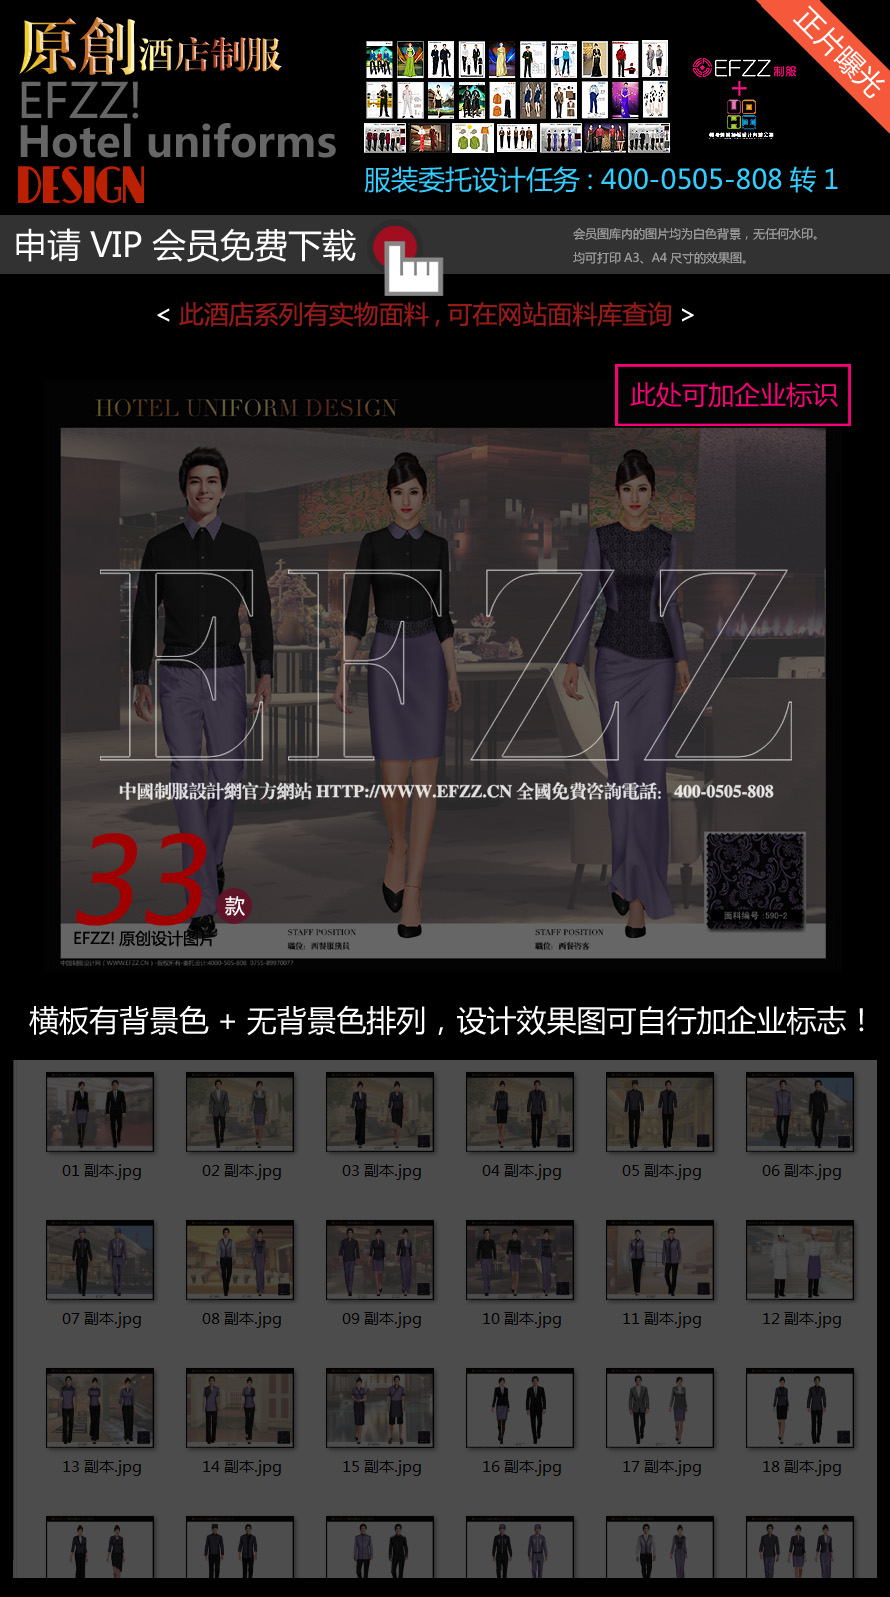 紫丁香星级酒店服装设计图